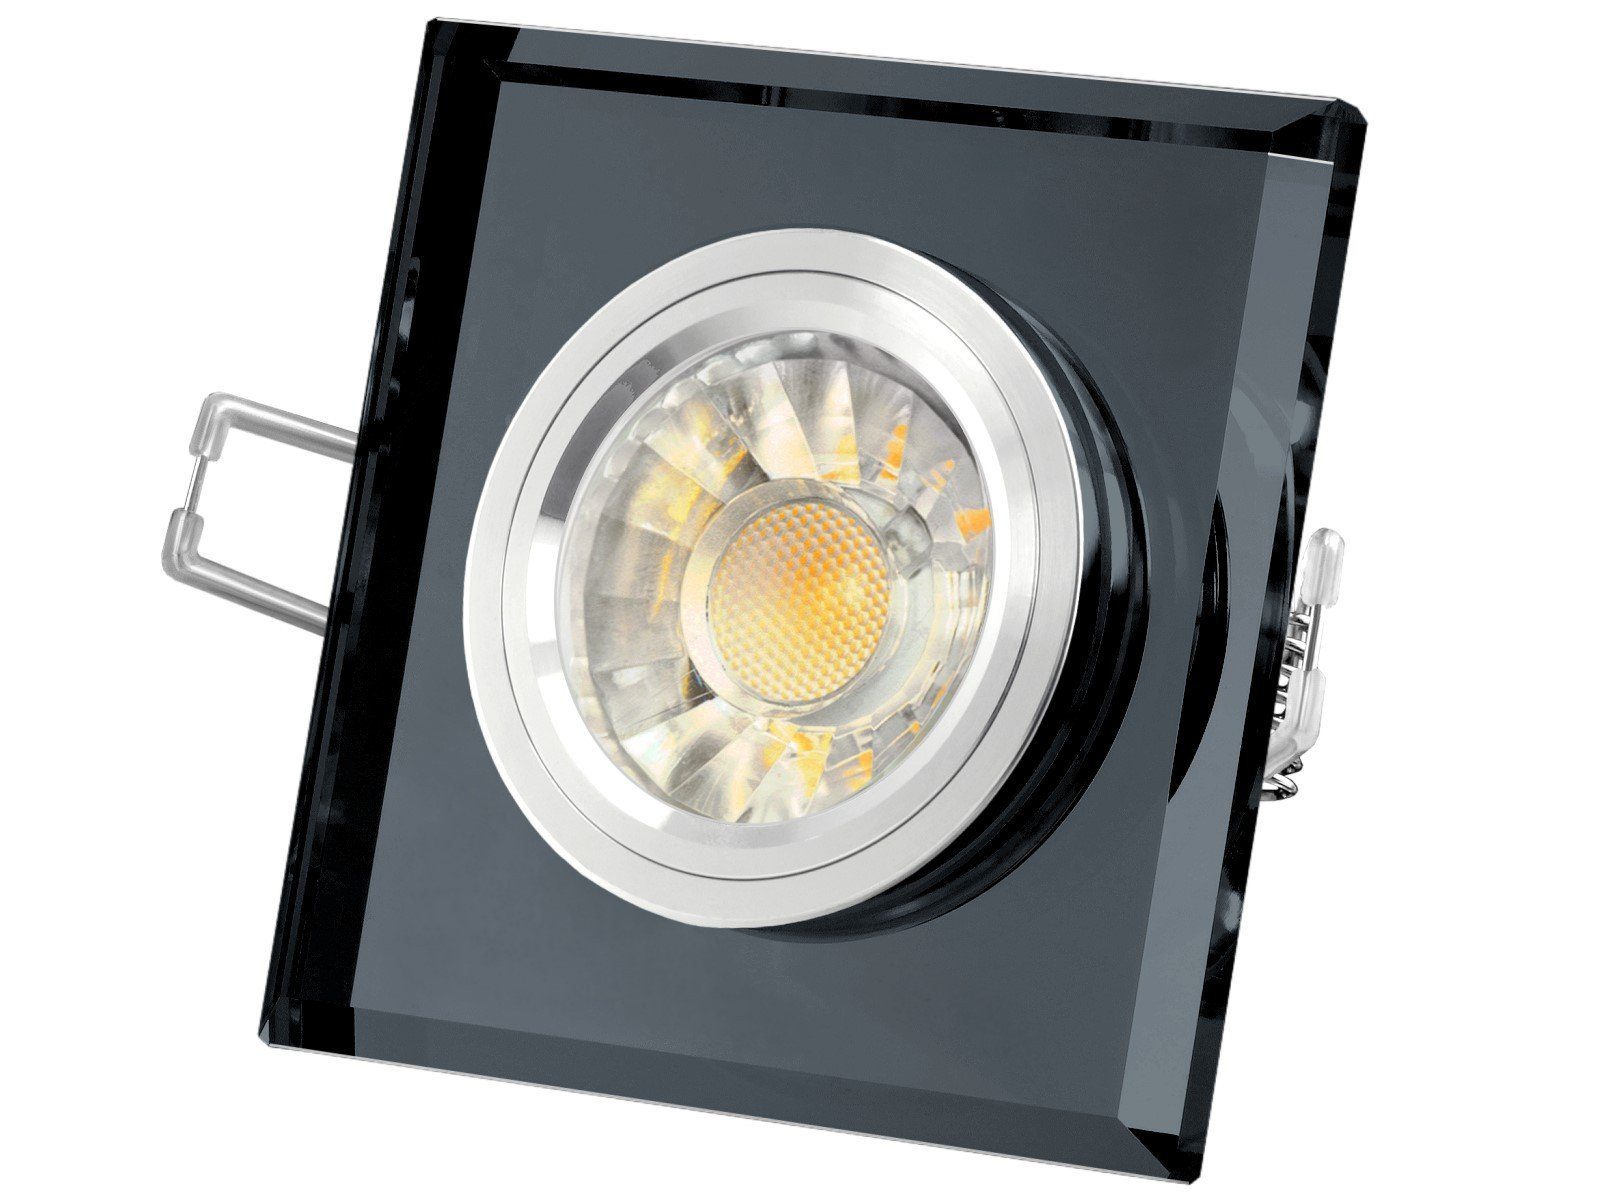 SSC-LUXon spiegelnd, quadratisch, Warmweiß LED Einbaustrahler Alu Innenring, Glas LED-Einbaustrahler schwarz